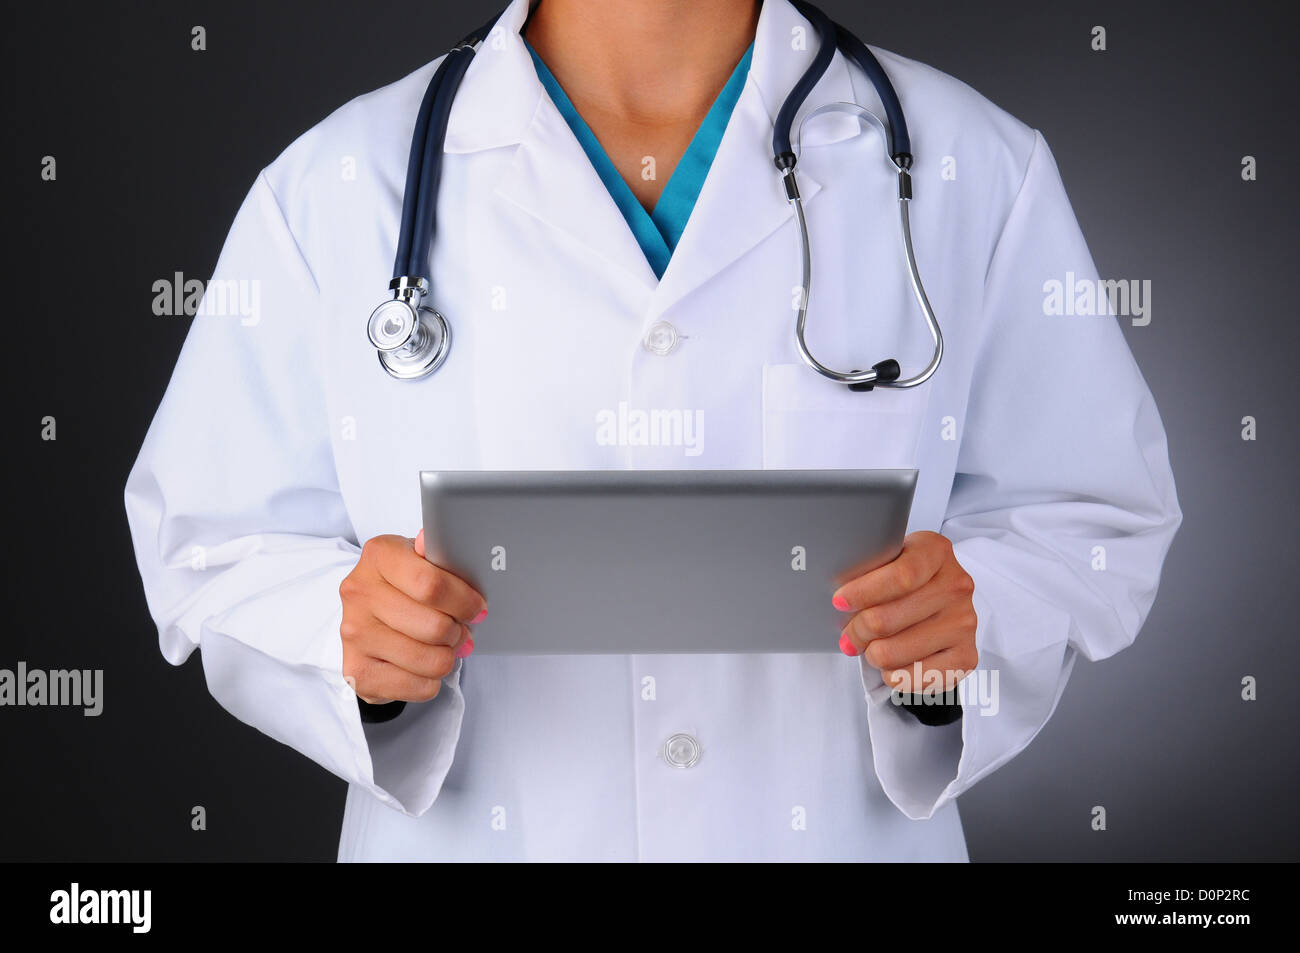 Libre d'un professionnel de la santé des femmes portant des gommages et lab coat holding a tablet computer. Banque D'Images